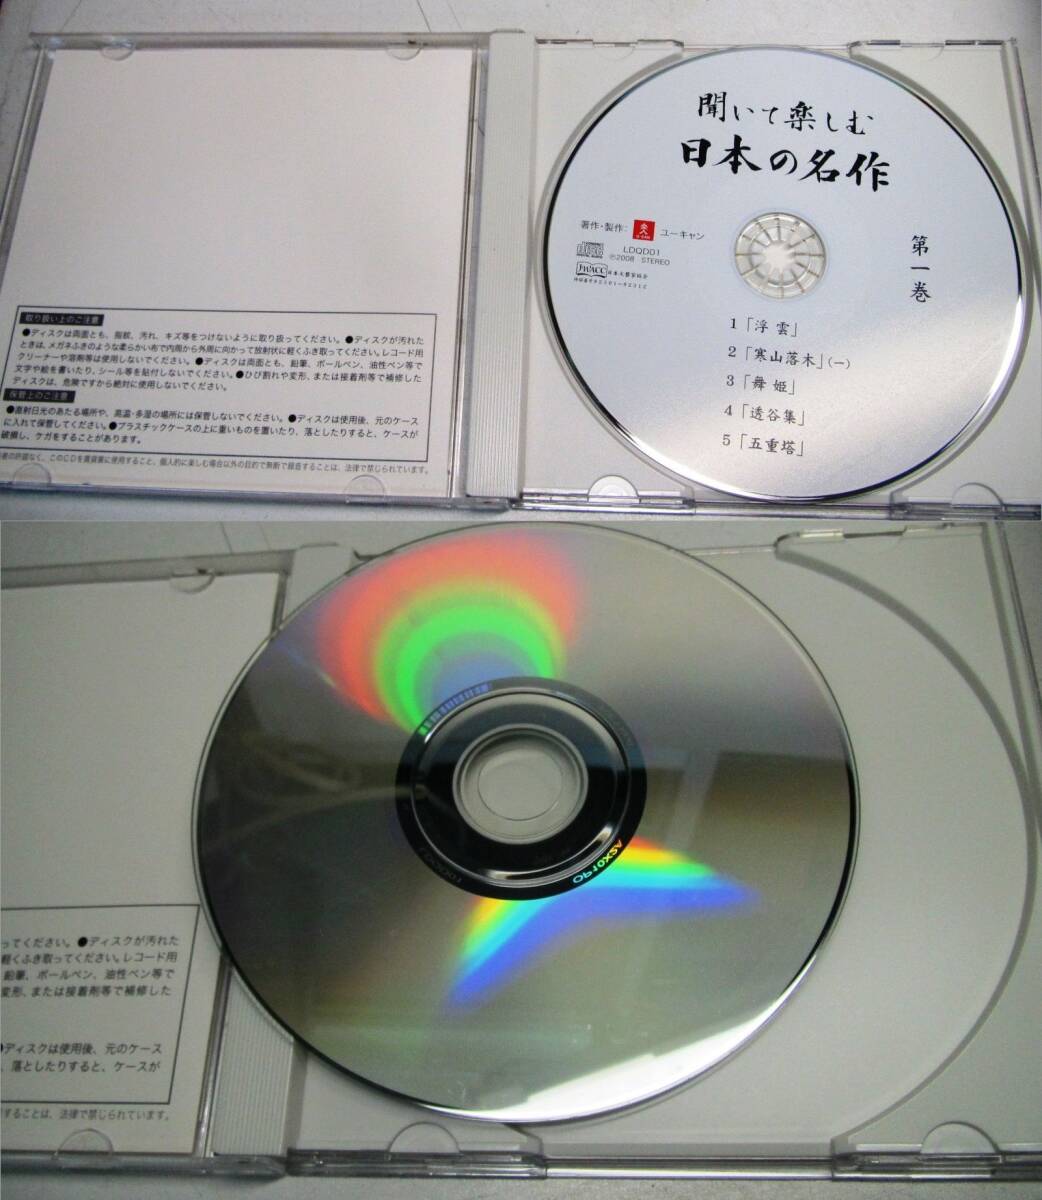 ユーキャン 聞いて楽しむ 日本の名作 CD 16巻セット _画像4